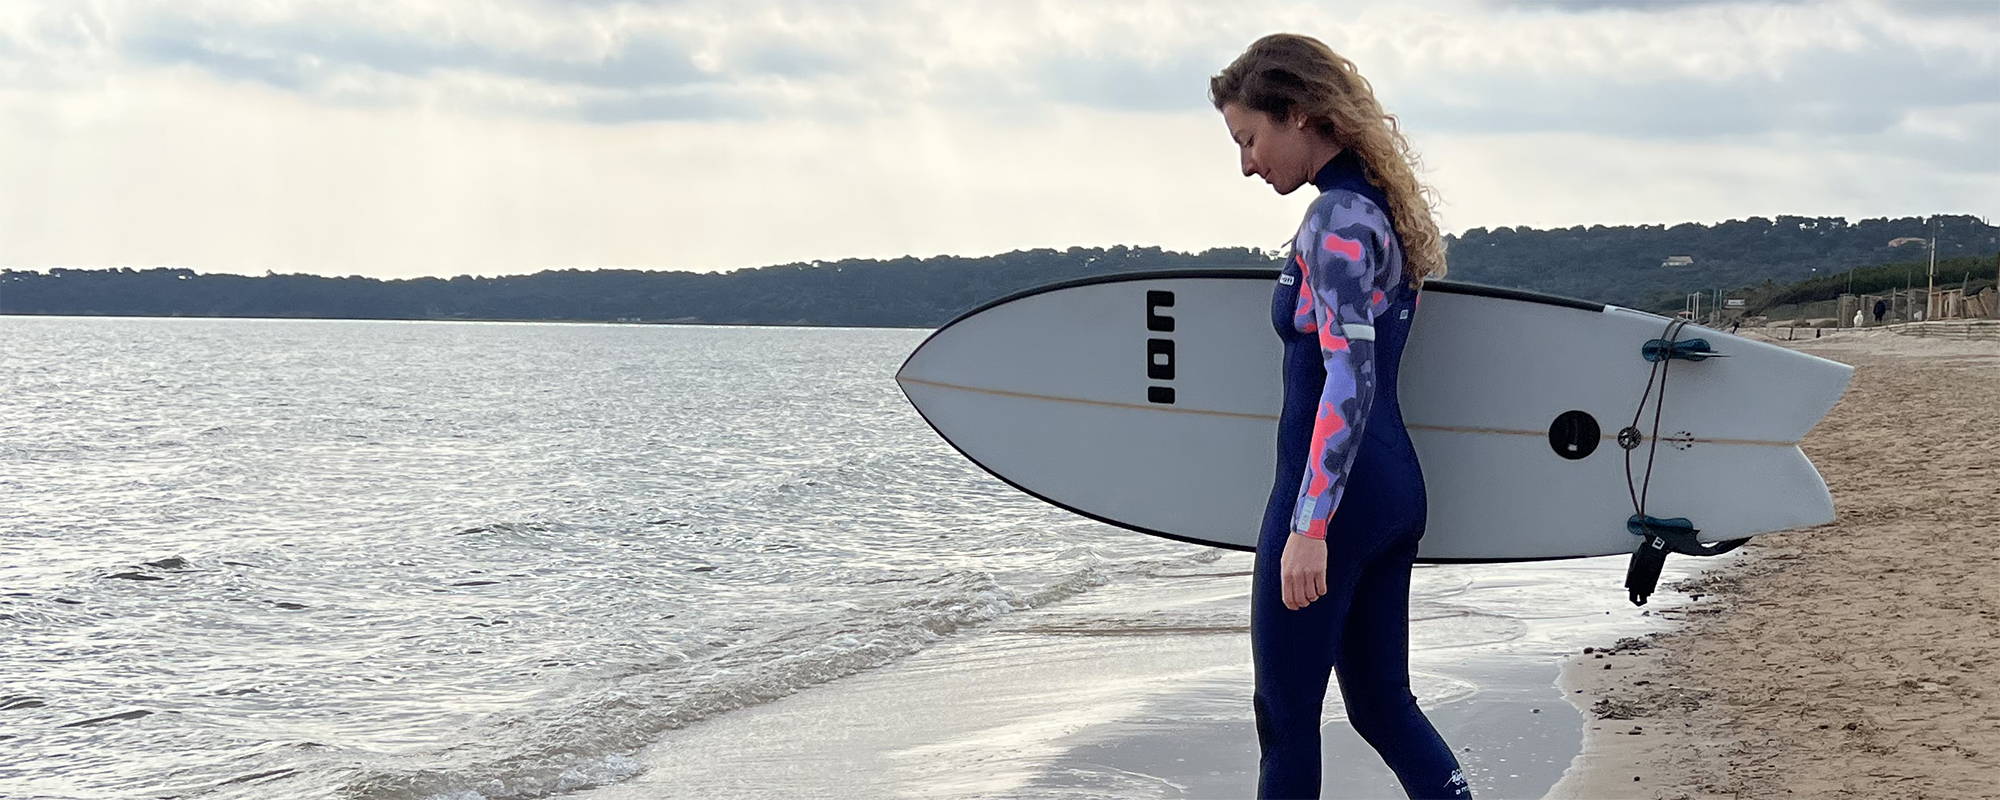 Une fille en combinaison neoprene ION  avec un surf sur une plage